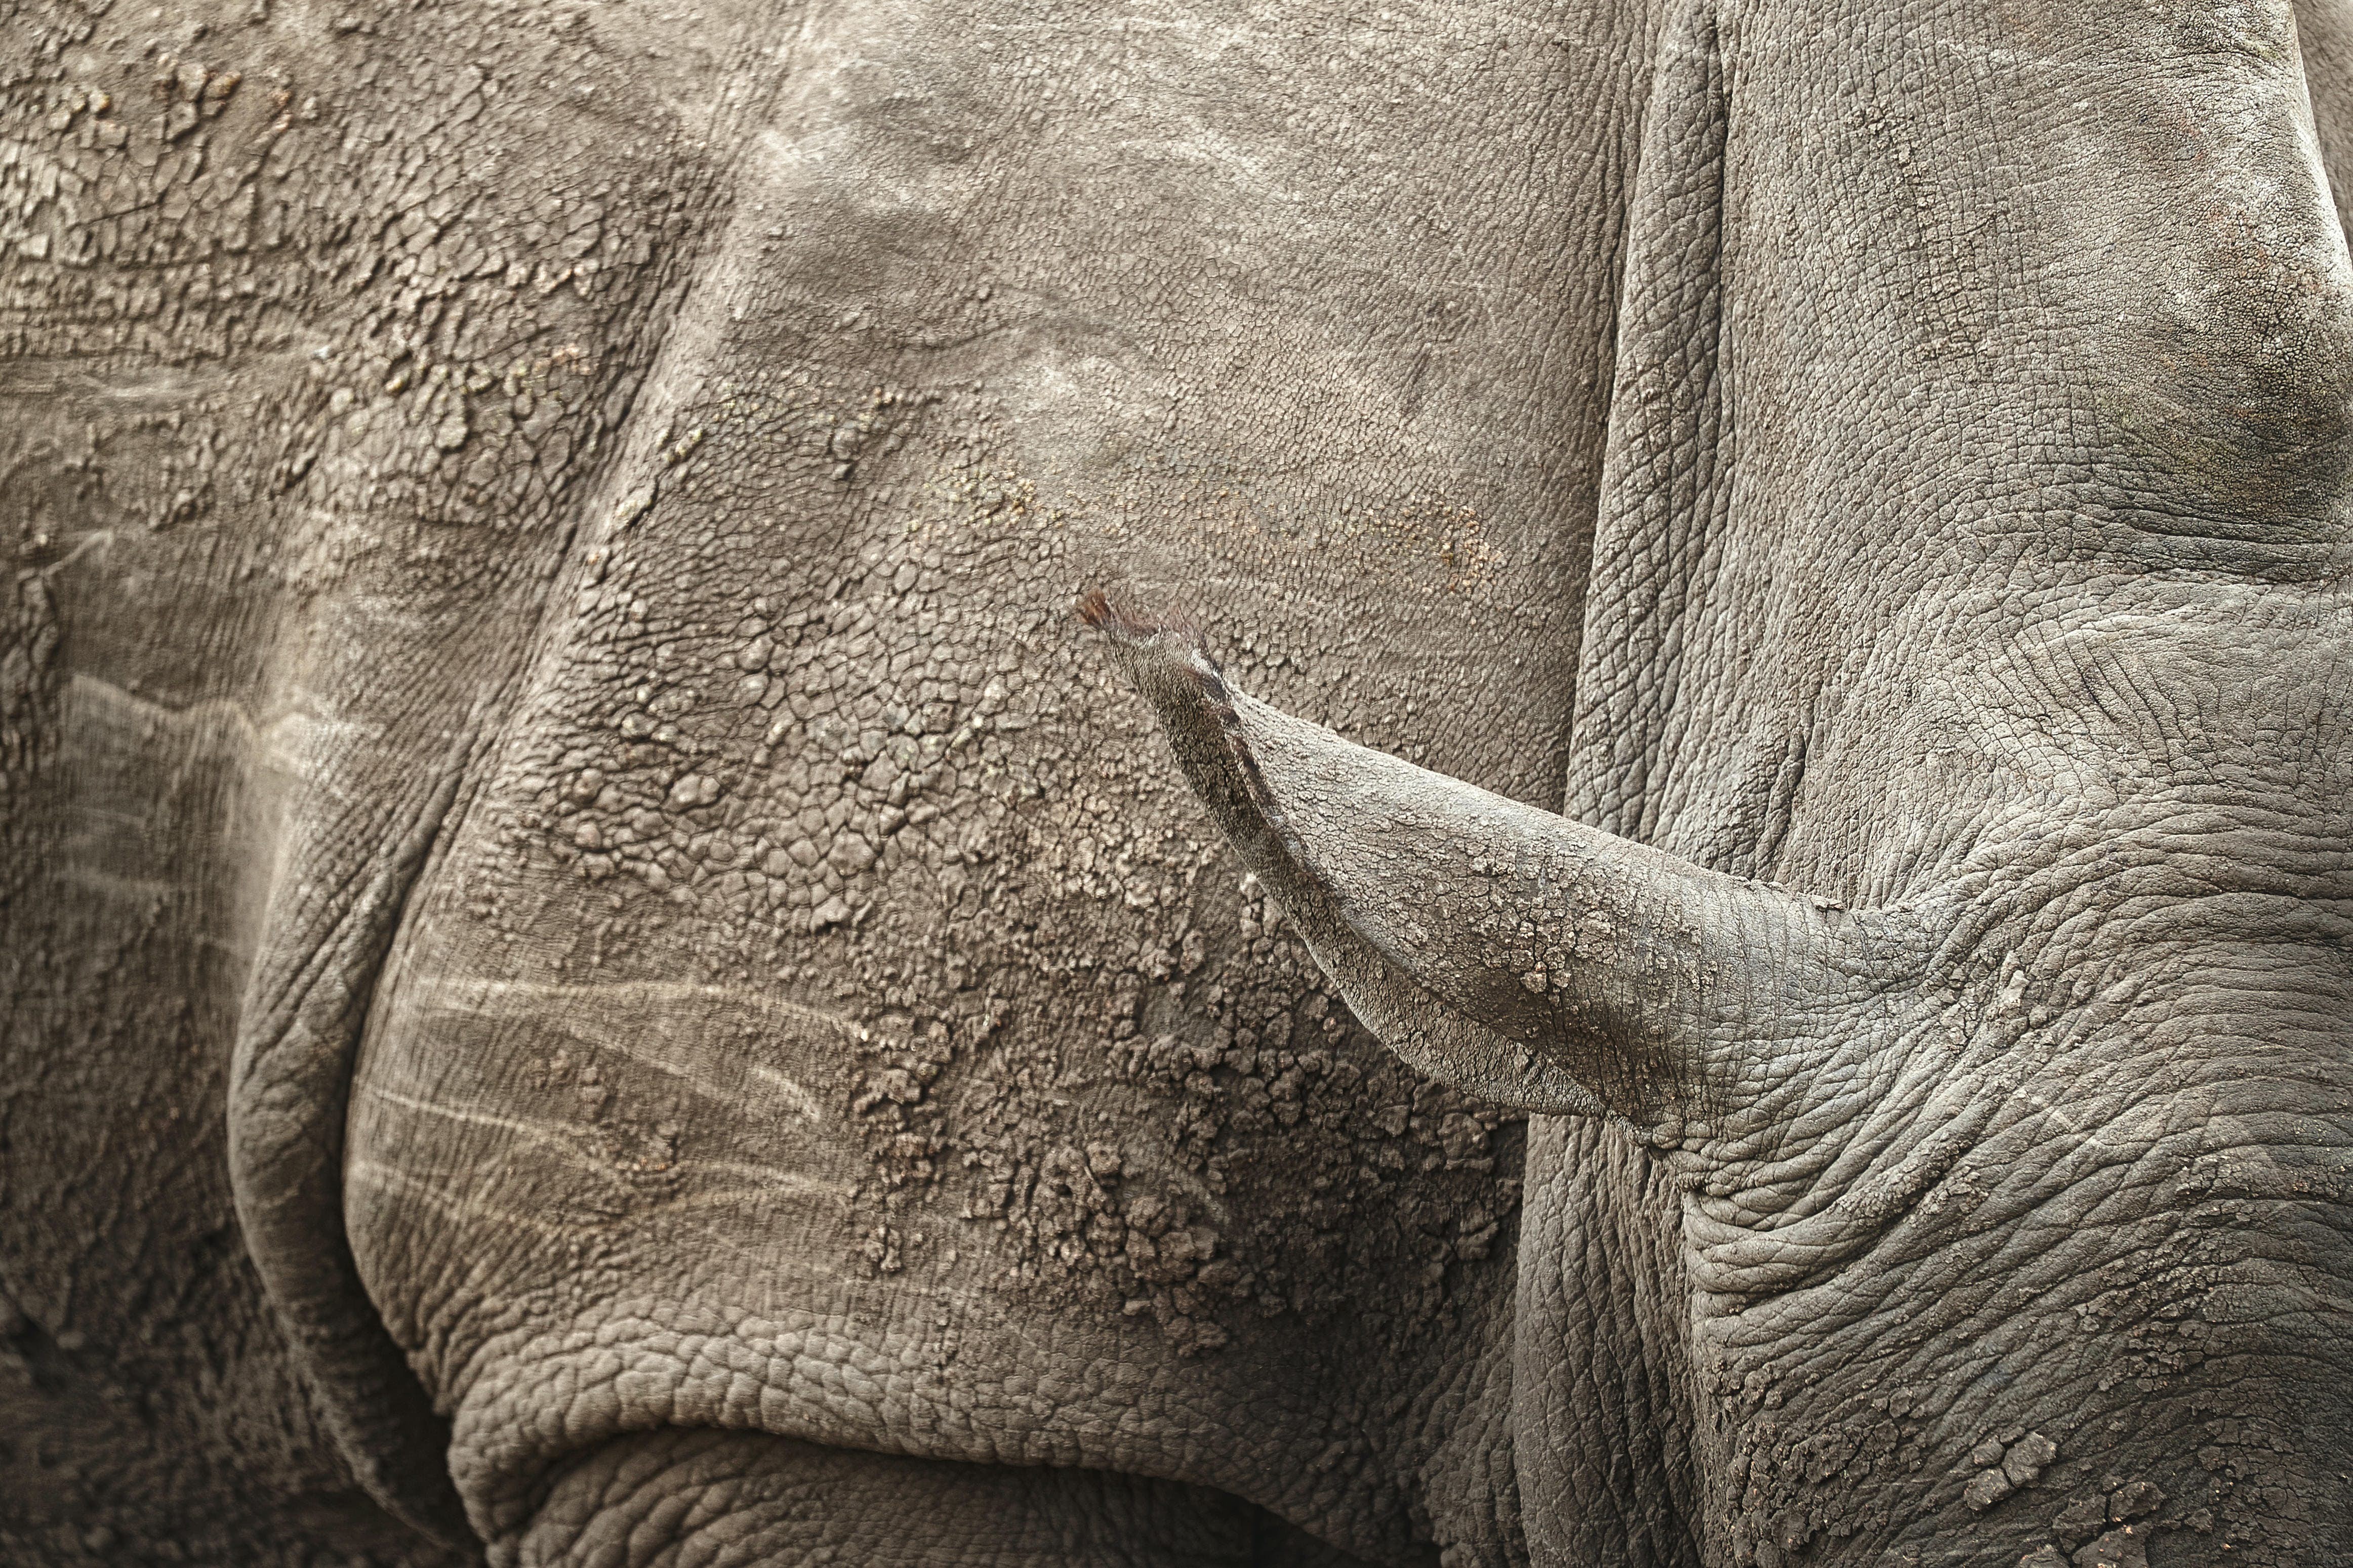 Come i bracconieri di rinoceronti hanno approfittato della pandemia e come puoi aiutarli a fermarli 